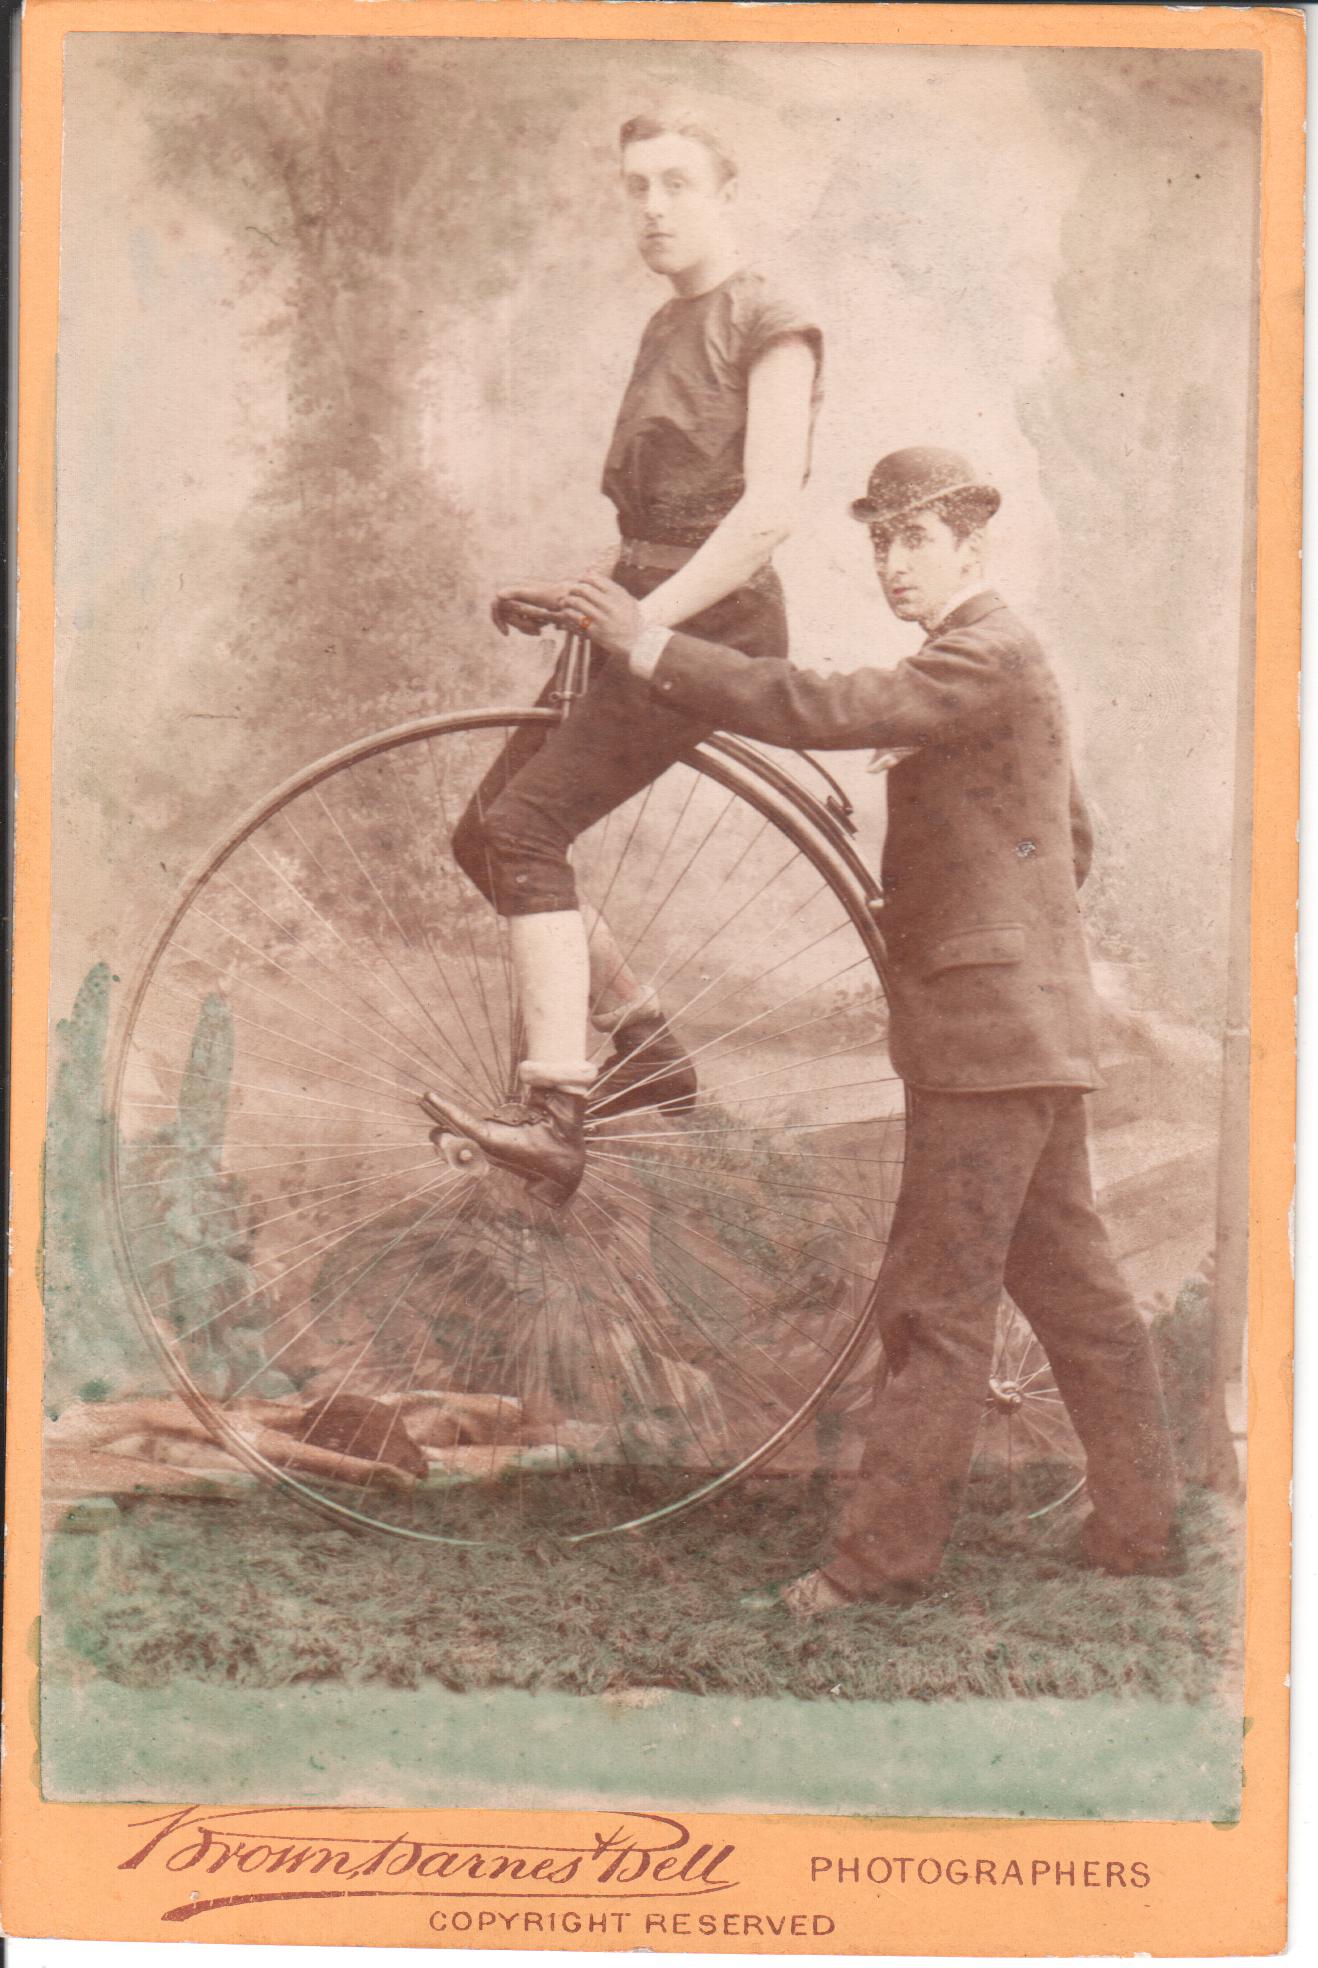 Racing cyclist and his "Starter" Circa 1883